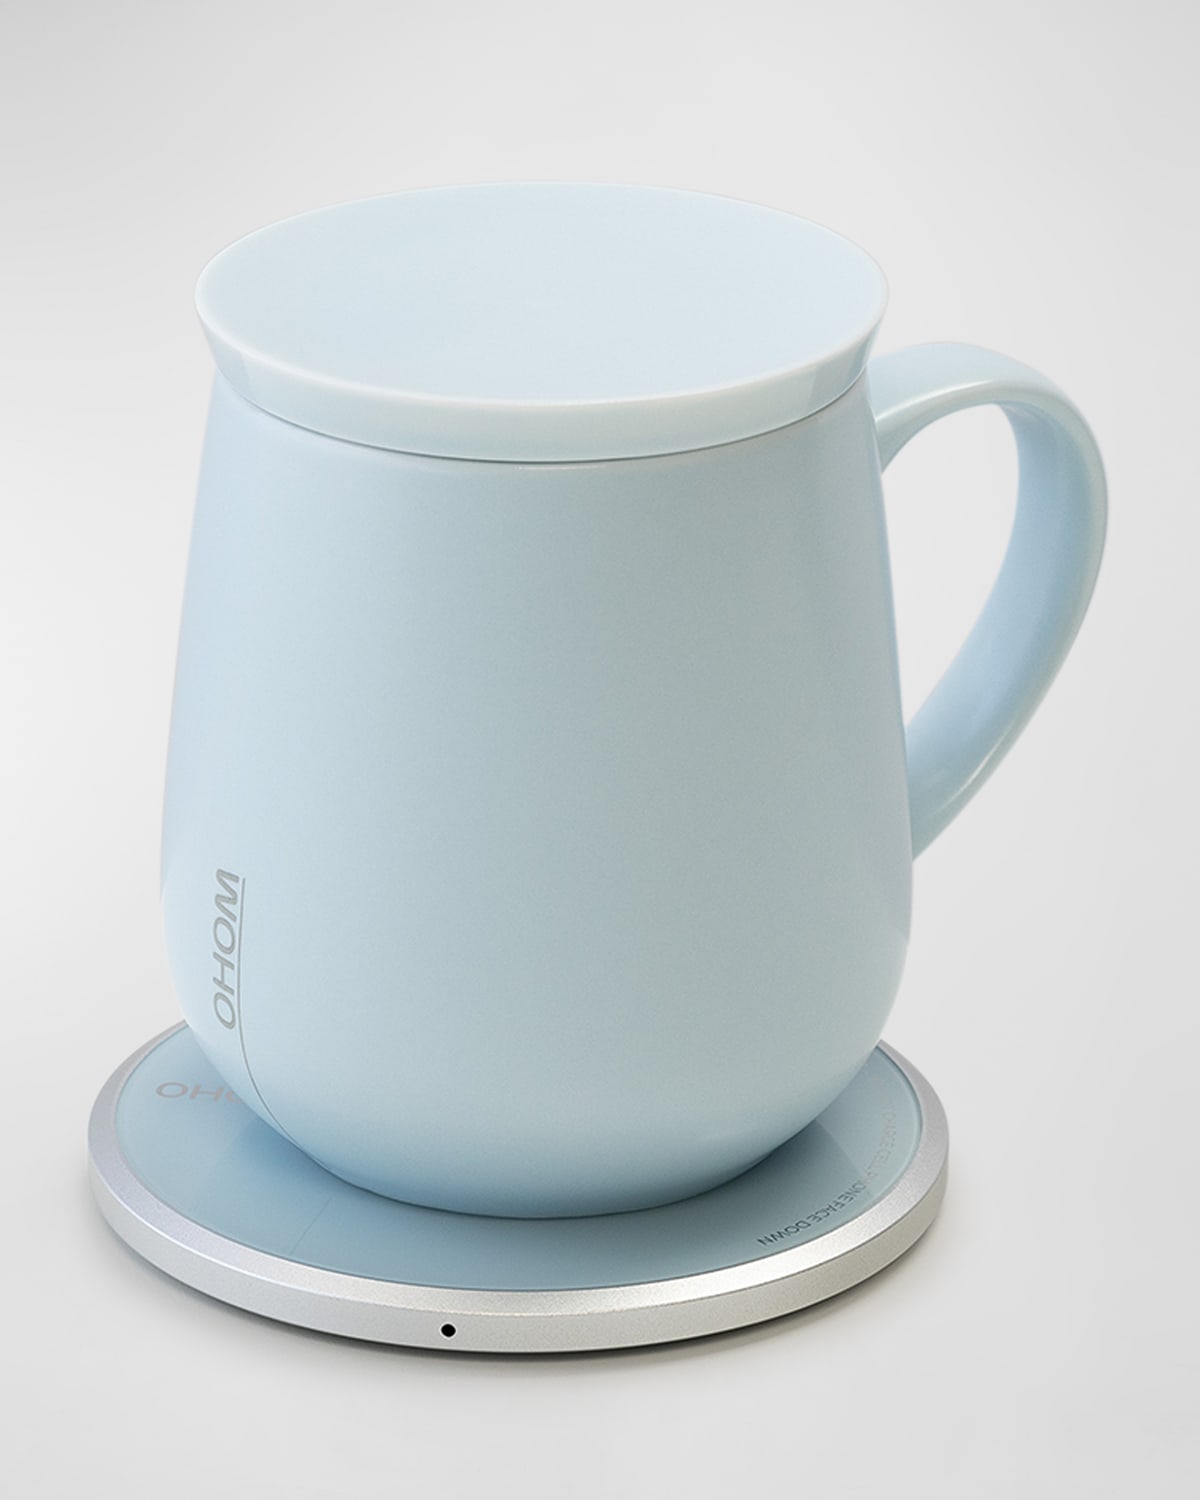 Ohom Ui Self-heating Mug, 12 Oz. In Blue